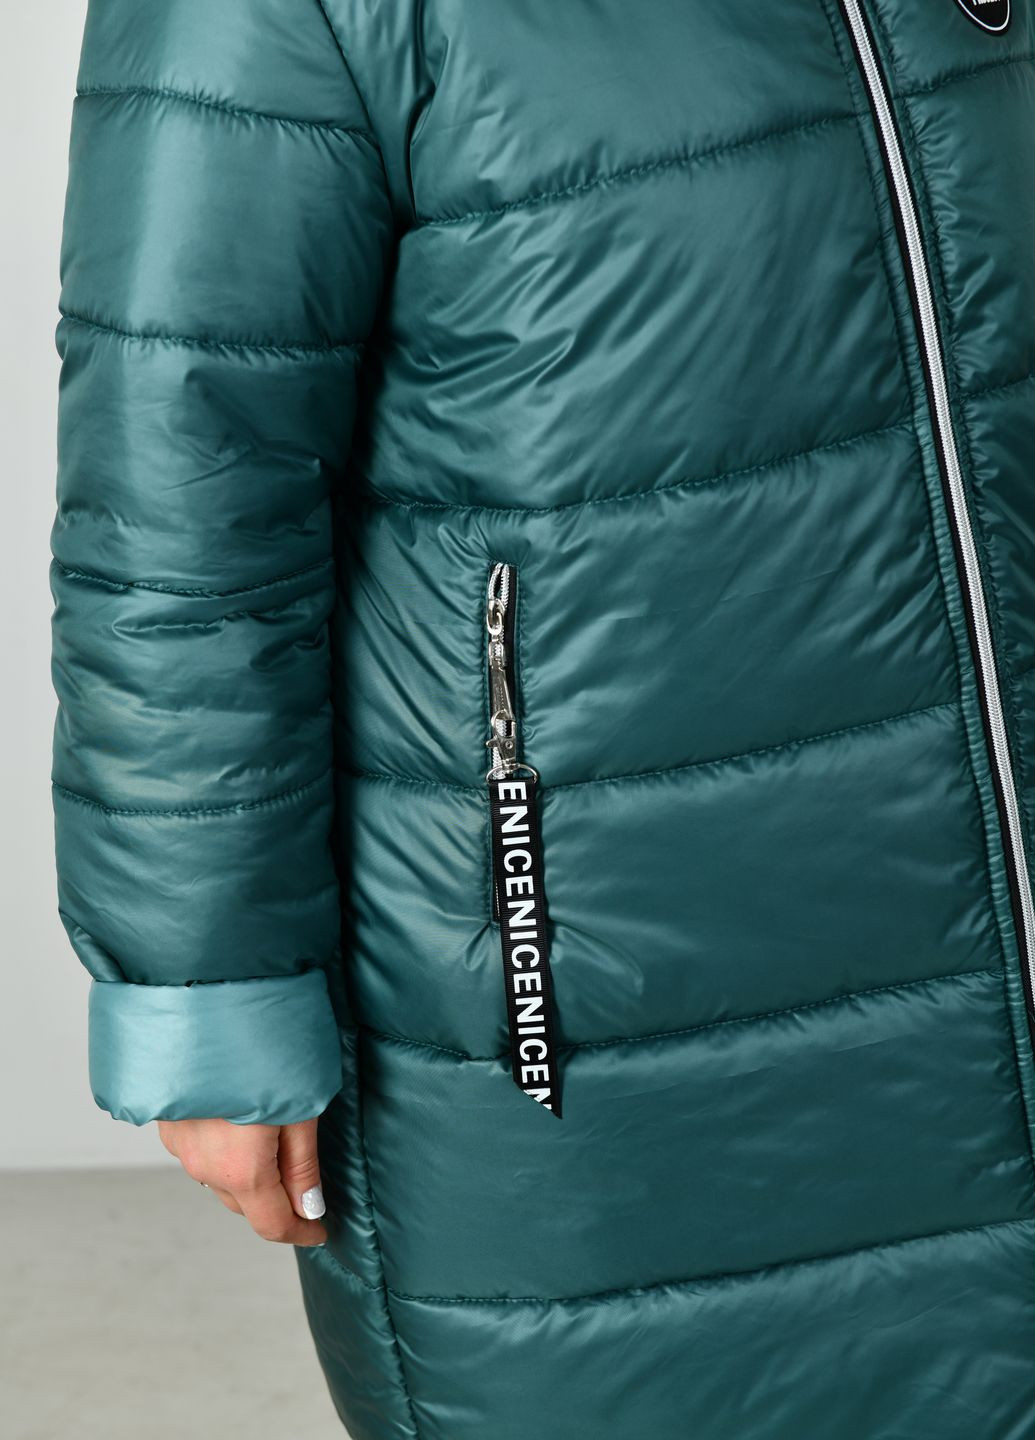 Зеленая зимняя зимняя длинная куртка No Brand